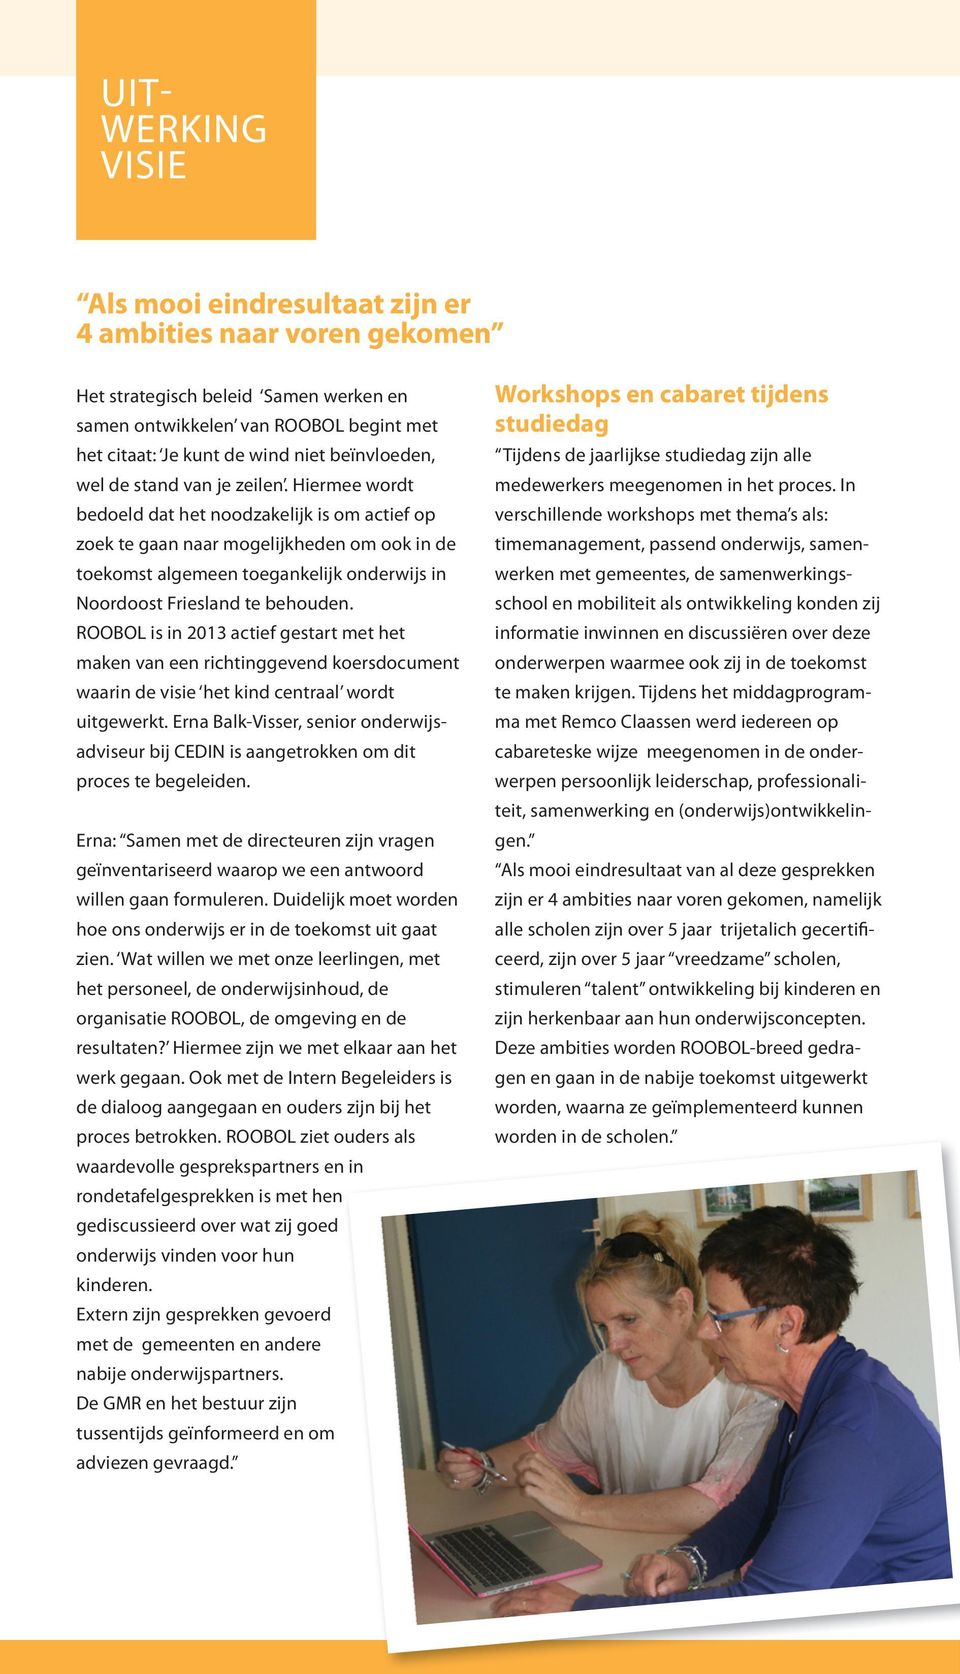 Hiermee wordt bedoeld dat het noodzakelijk is om actief op zoek te gaan naar mogelijkheden om ook in de toekomst algemeen toegankelijk onderwijs in Noordoost Friesland te behouden.